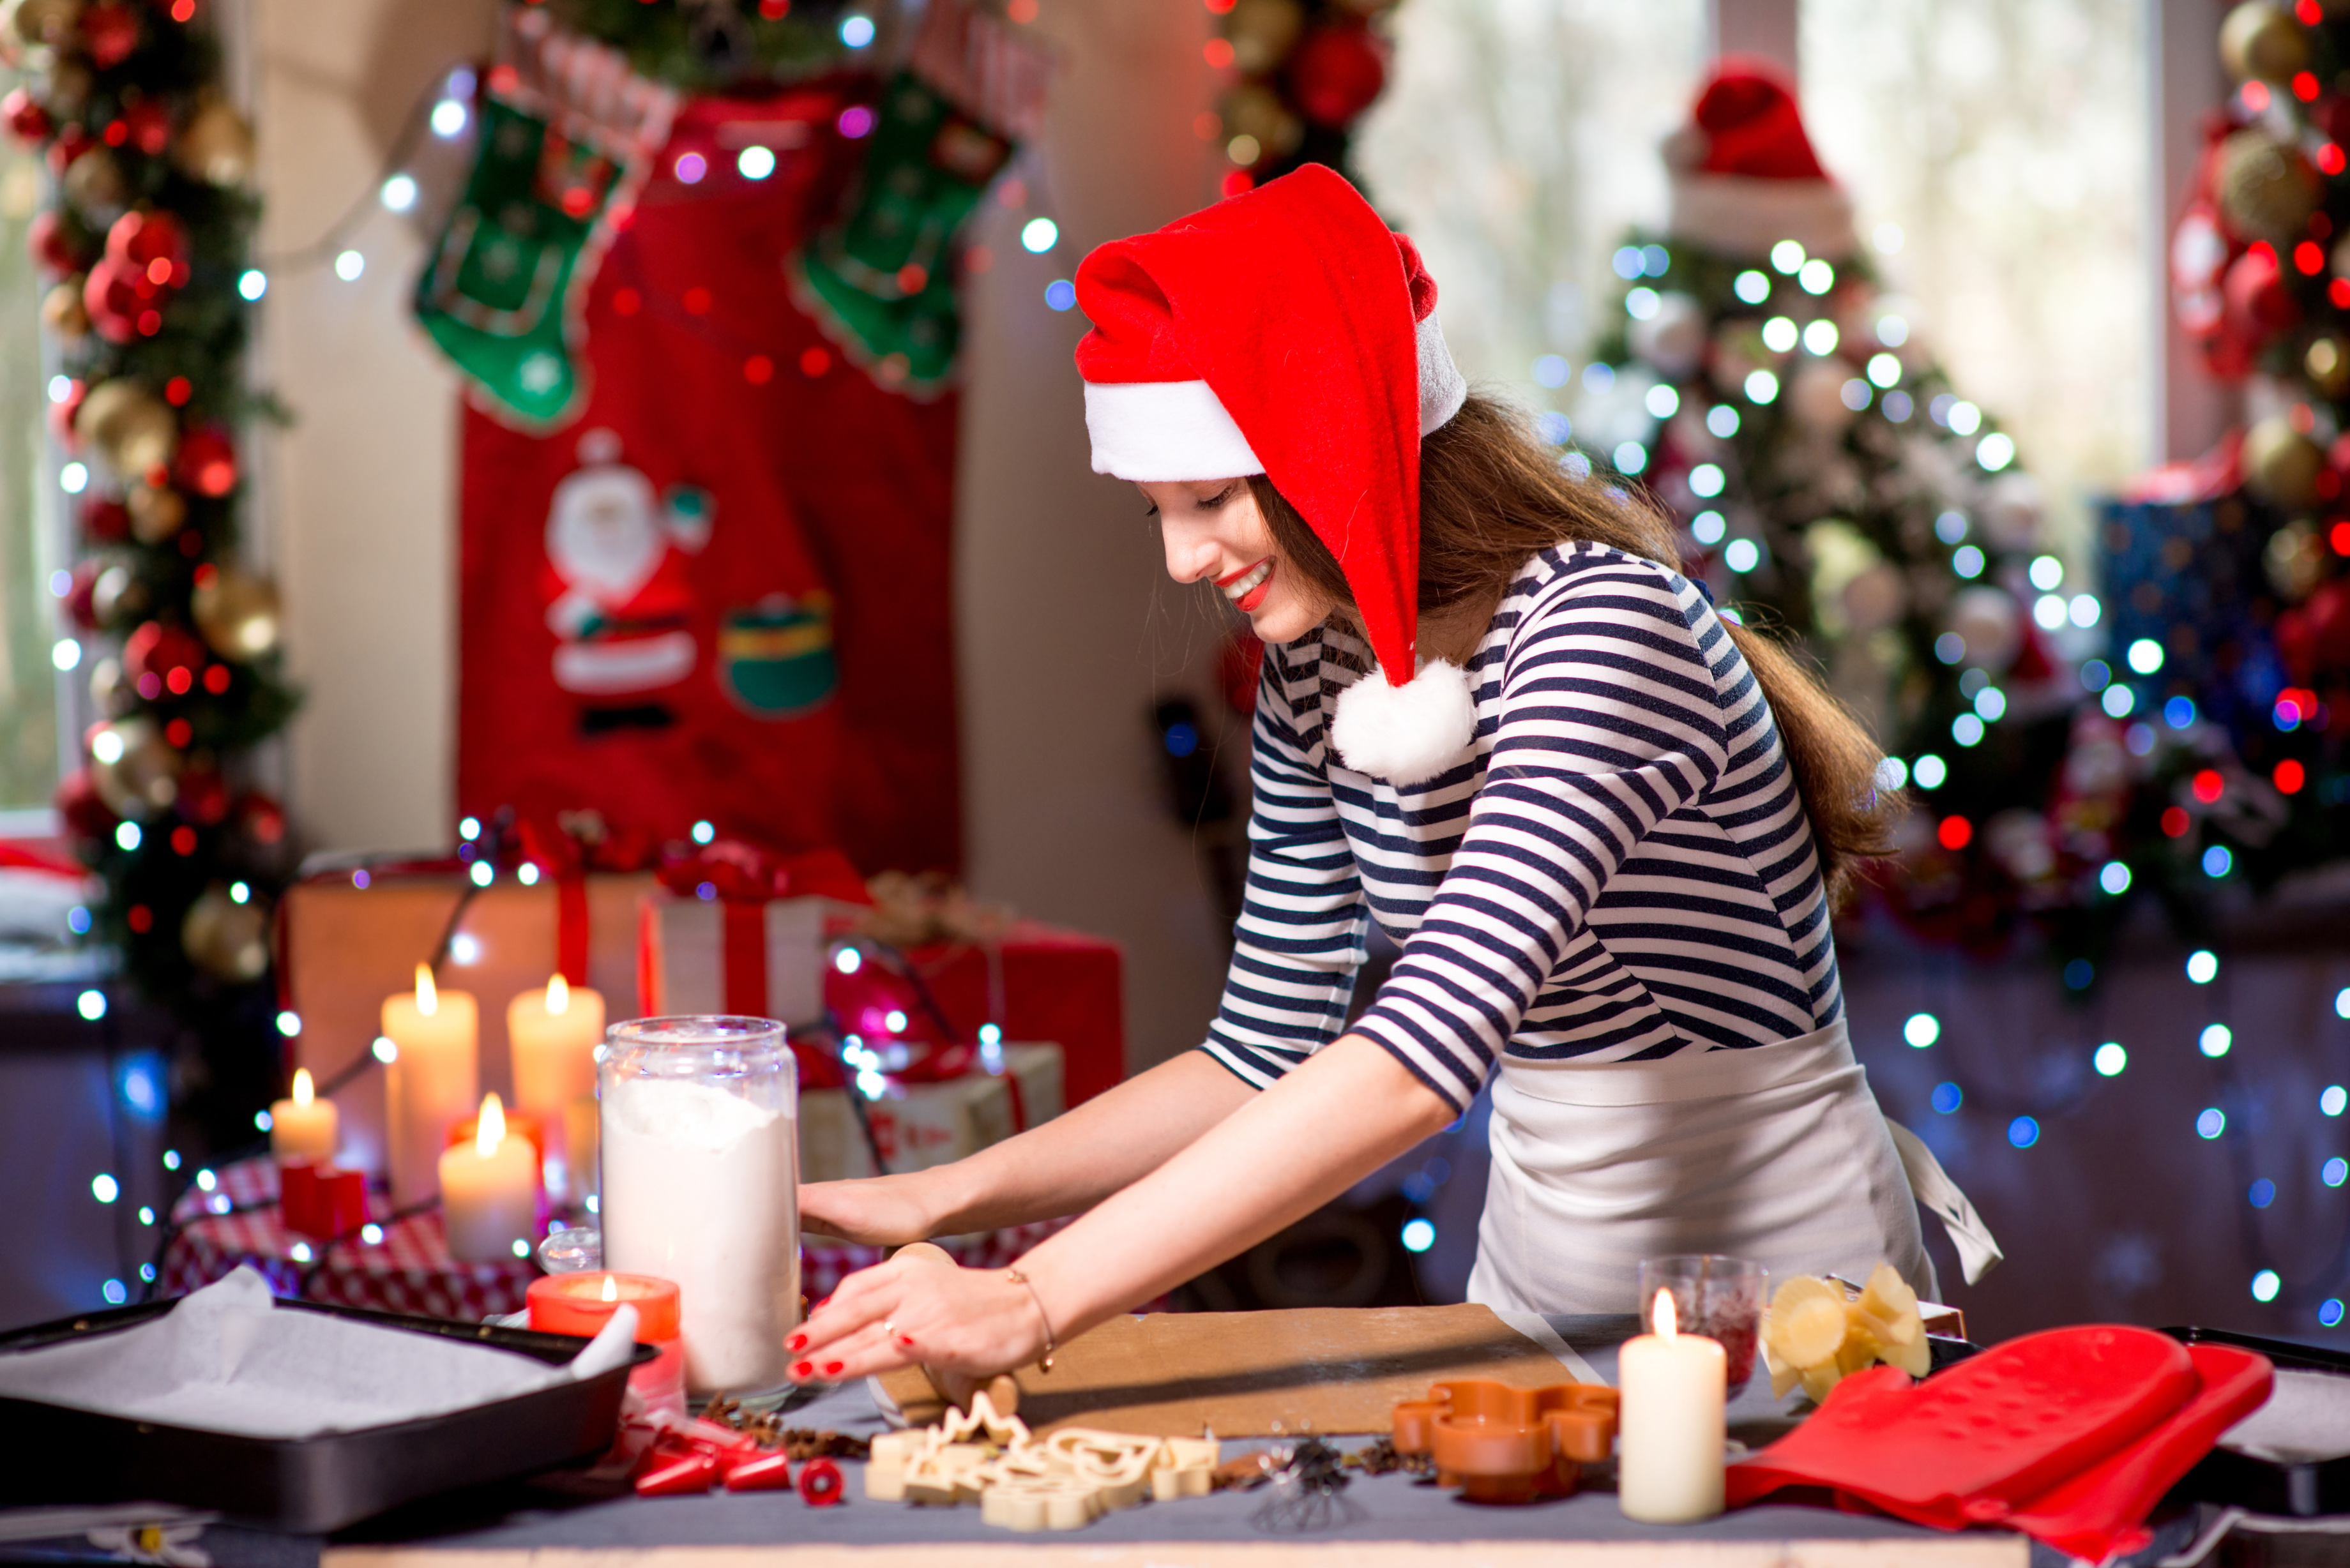 ¡Vuelve a casa por Navidad! y demuestra todo lo que has aprendido ¡Hay un chef dentro de ti!